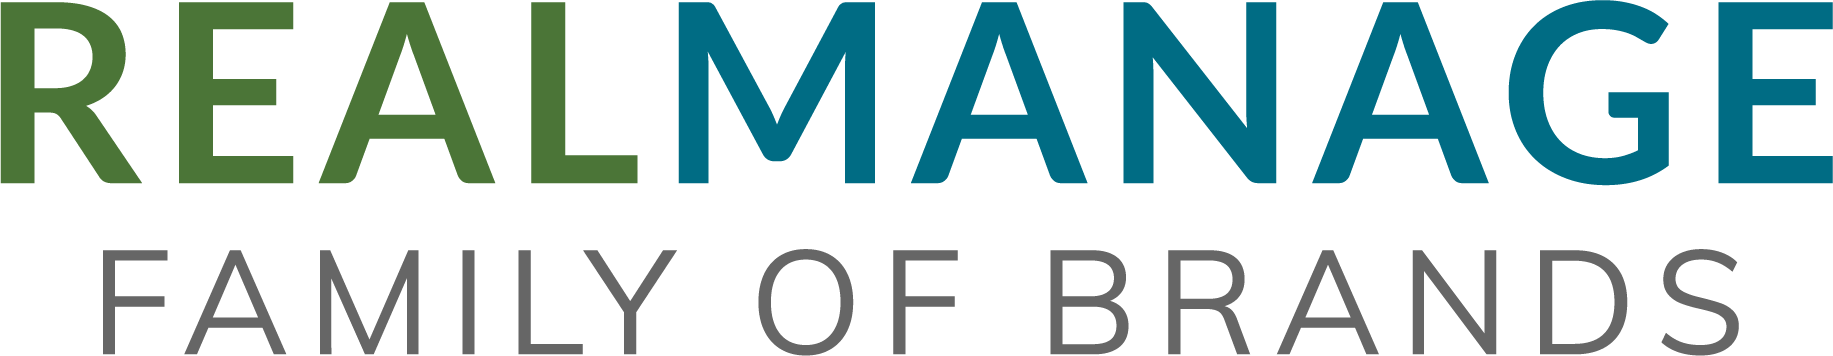 RealManage Family of Brands -  South Carolina logo